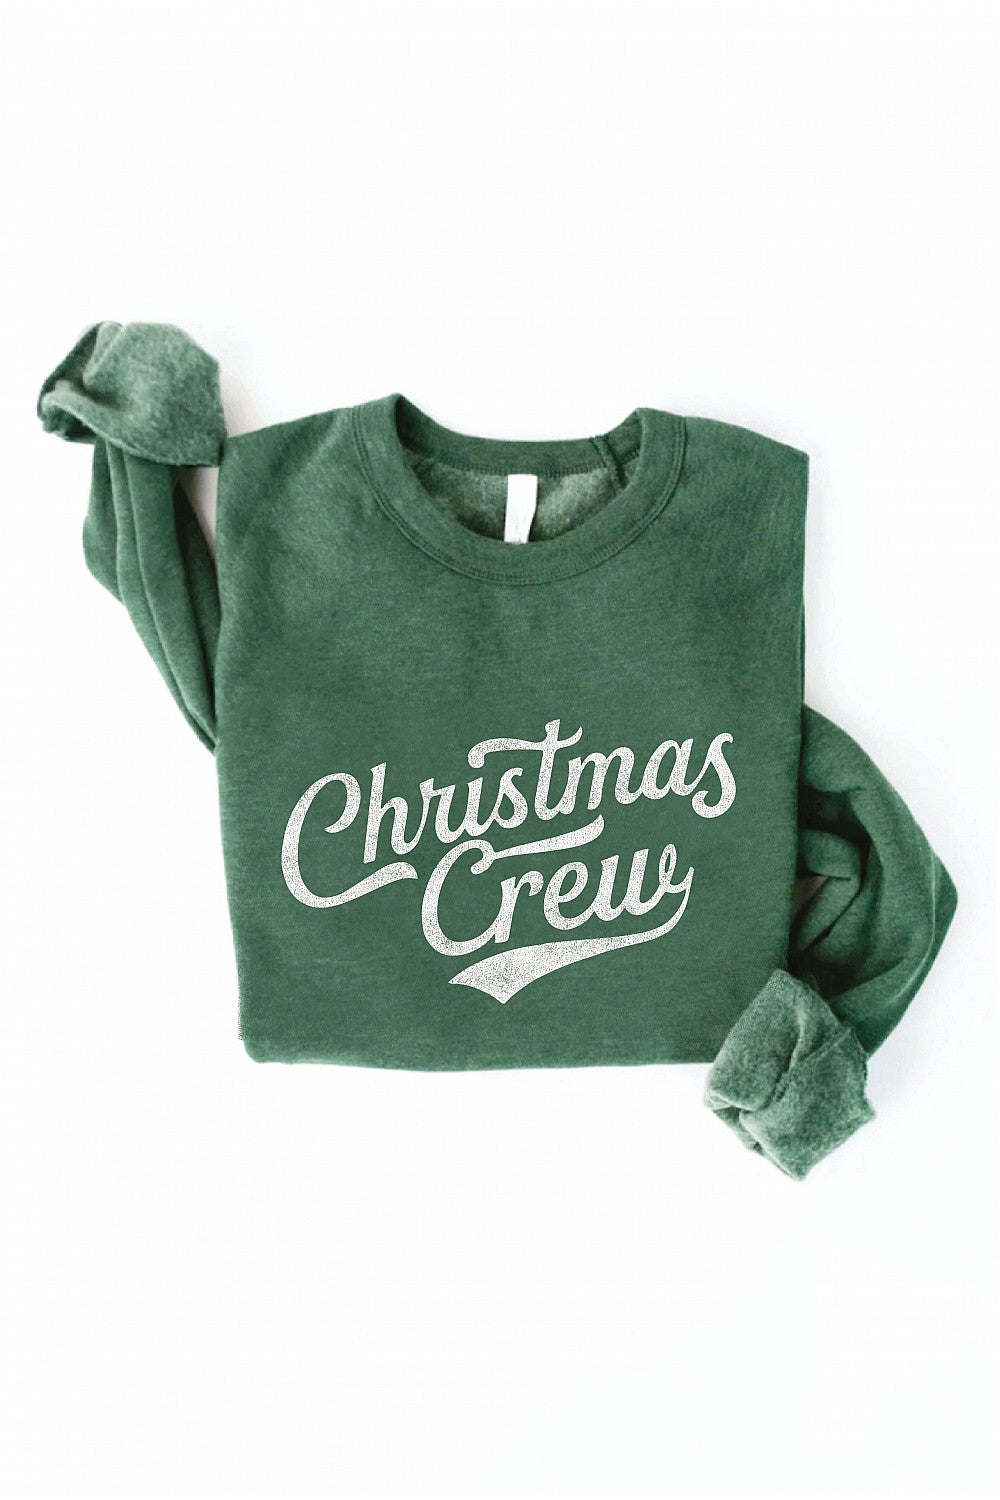 Oat Collective Christmas Crew Sweatshirt